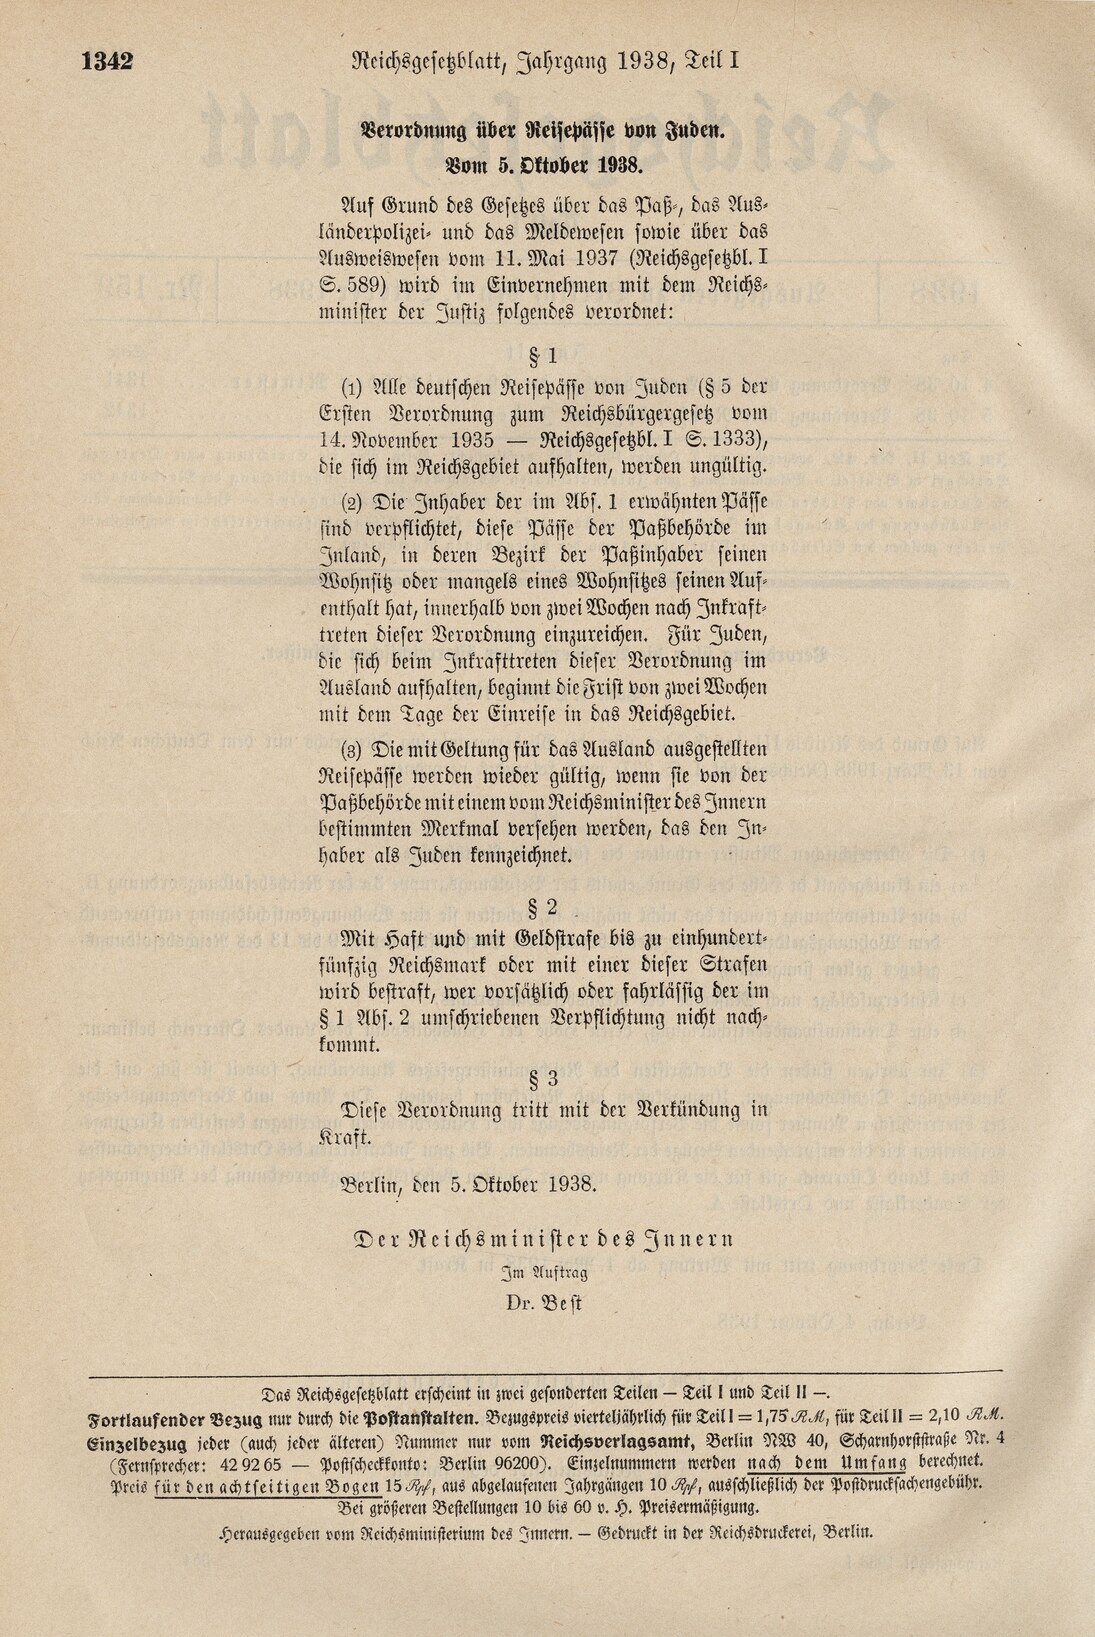 Verordnung über Reisepässe von Juden, 5. Oktober 1938. Reichsgesetzblatt Teil I, 1938, S. 1342